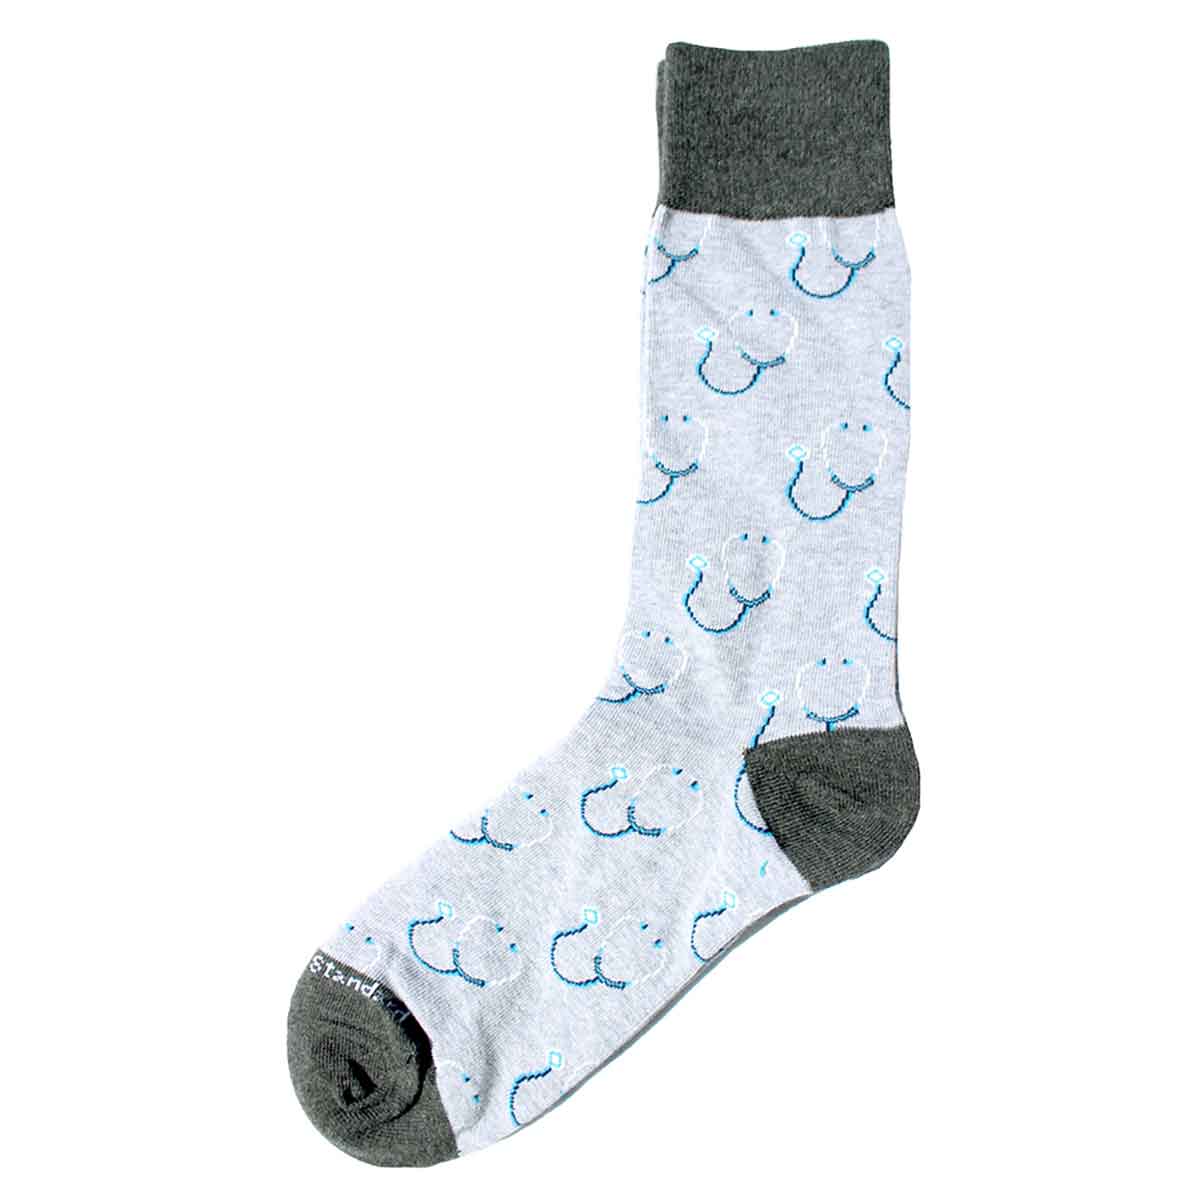 Men's Medical Socks   Gray/Blue   One Size